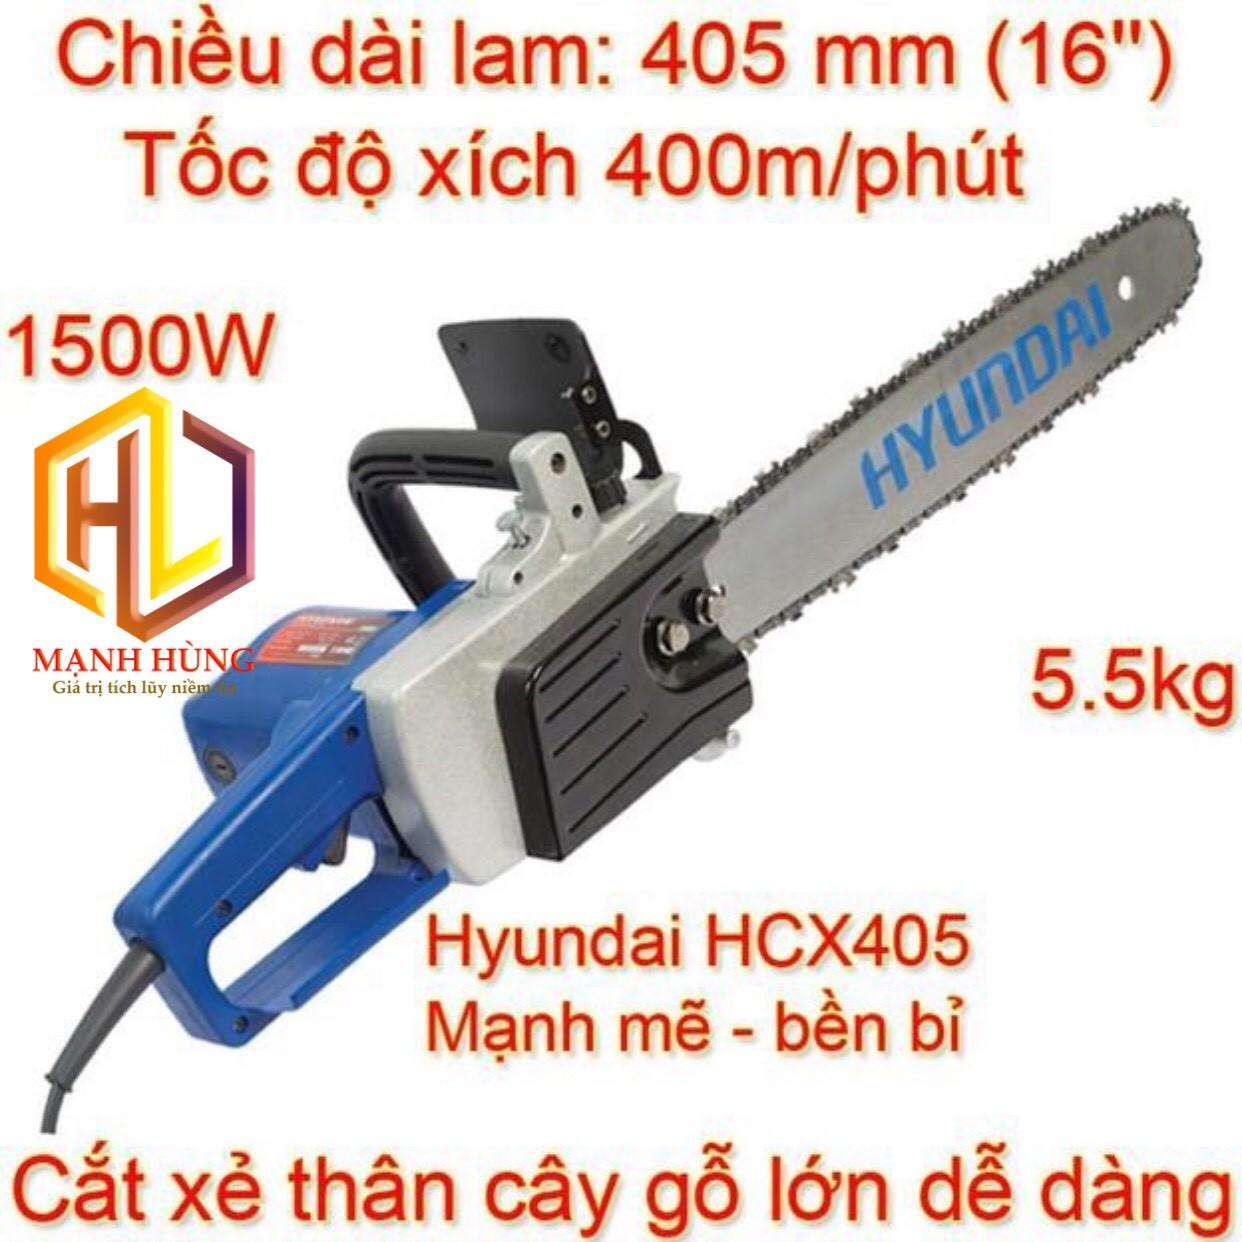 Máy cưa điện Hyundai HCX405 - 405mm